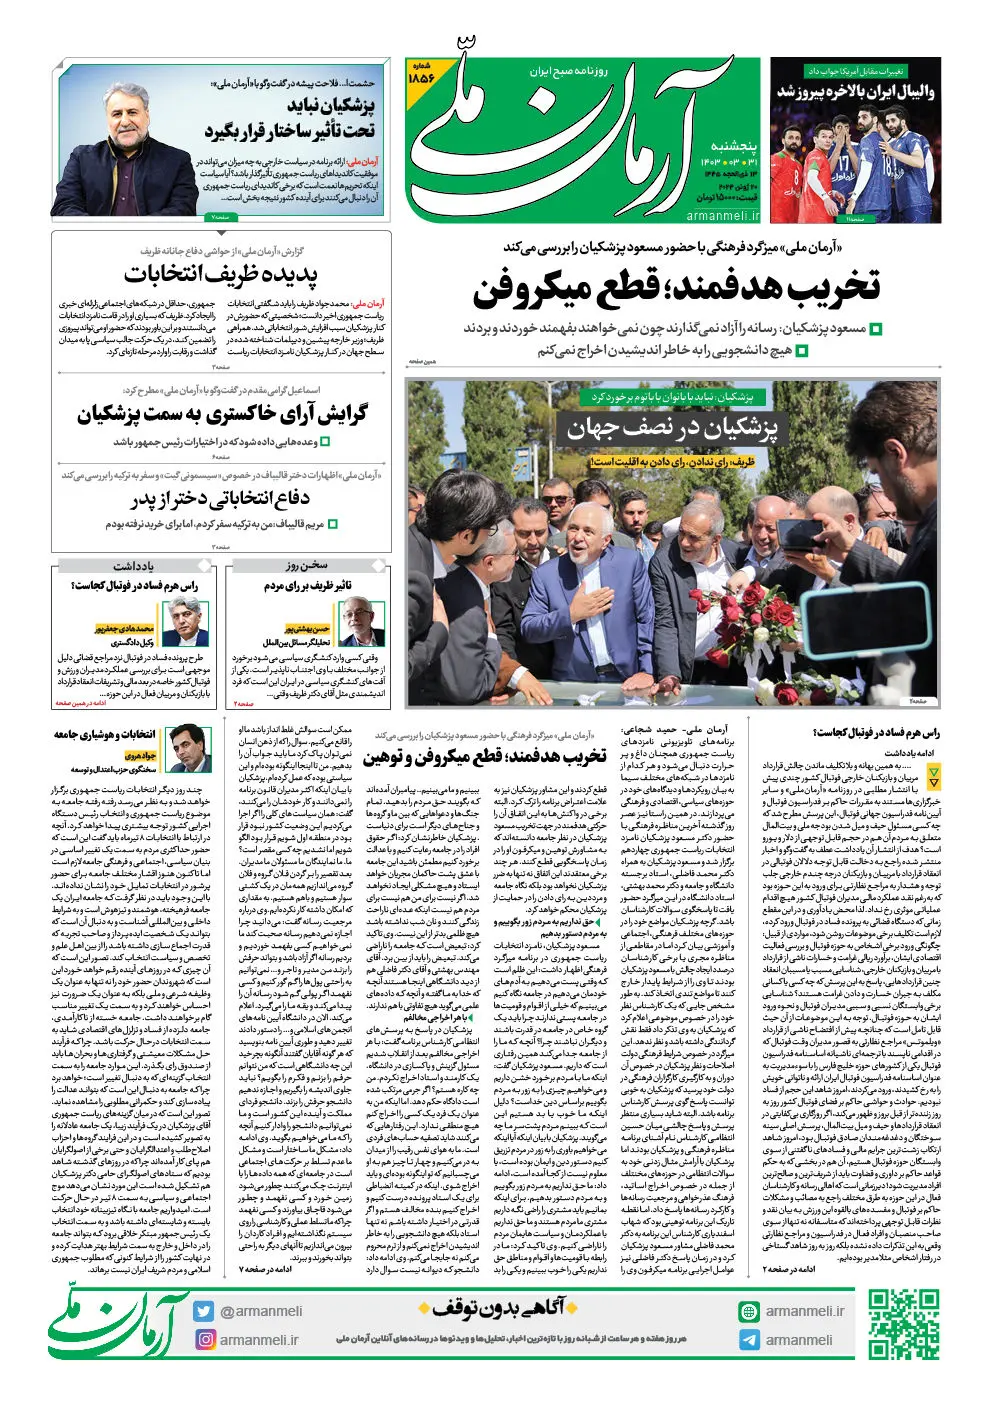 روزنامه آرمان ملی - پنجشنبه 31 خرداد - شماره 1856 